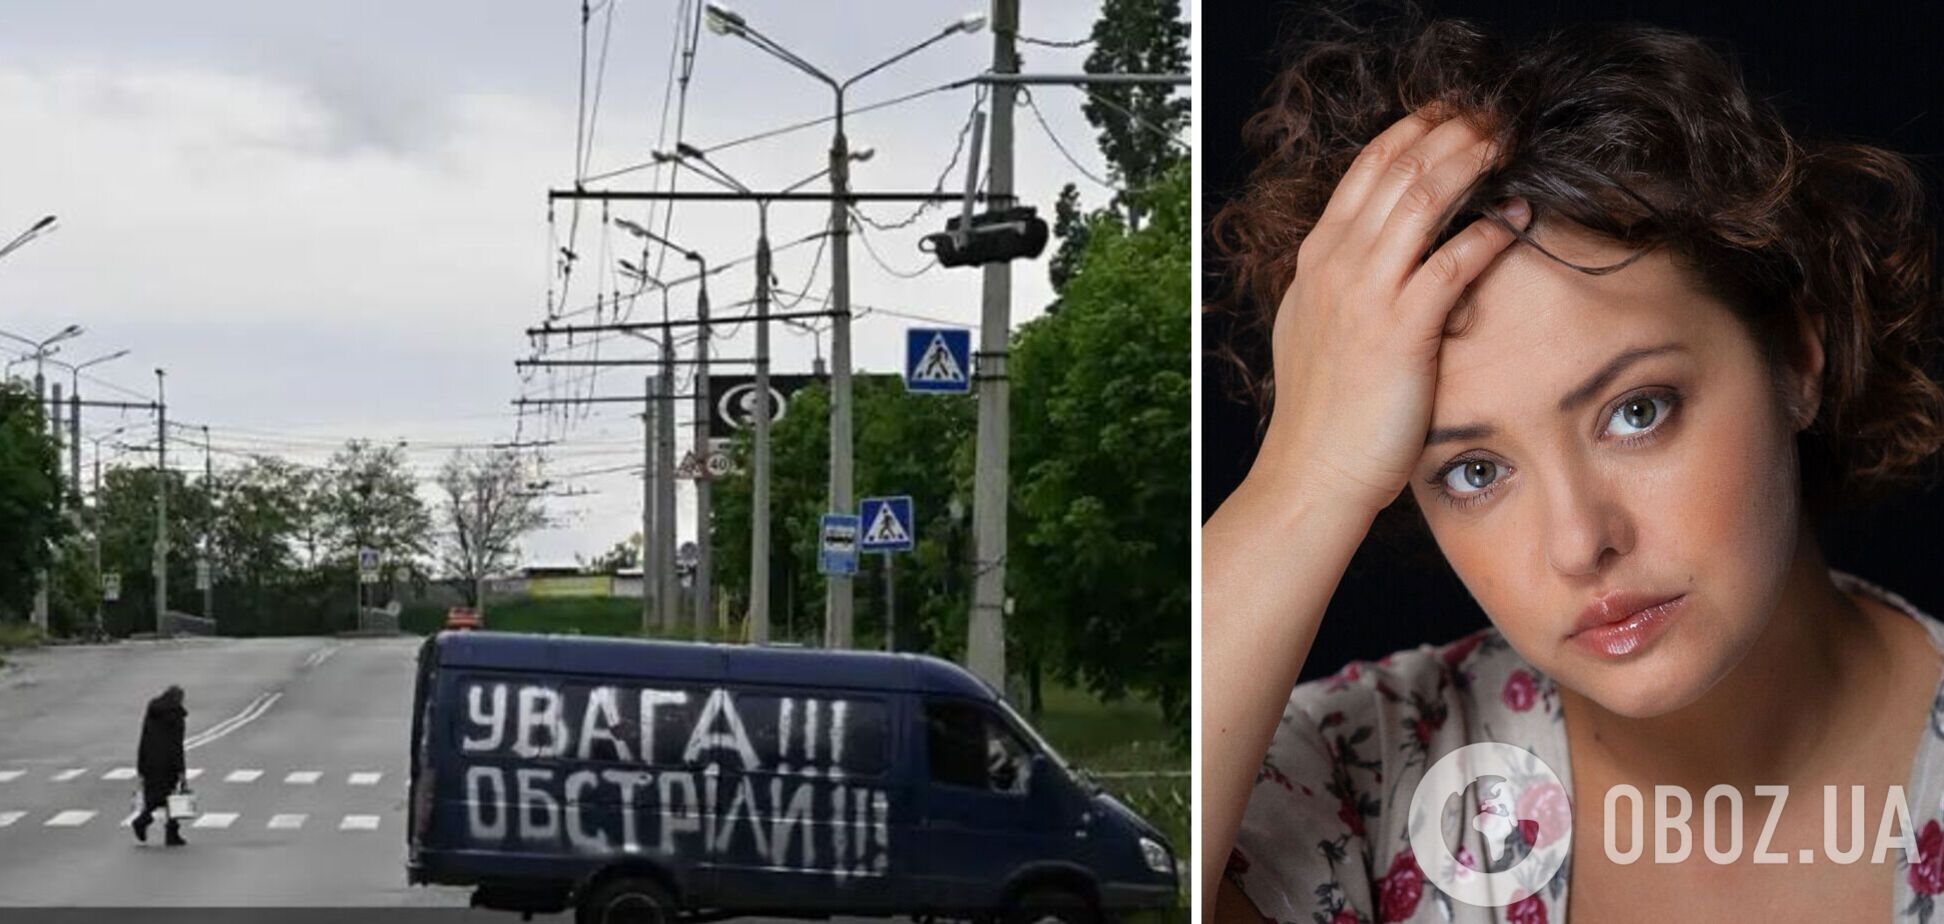 'Россияне не дошли до нас километр'. Жена актера Костышина рассказала, как они с мужем стали живой мишенью для оккупантов